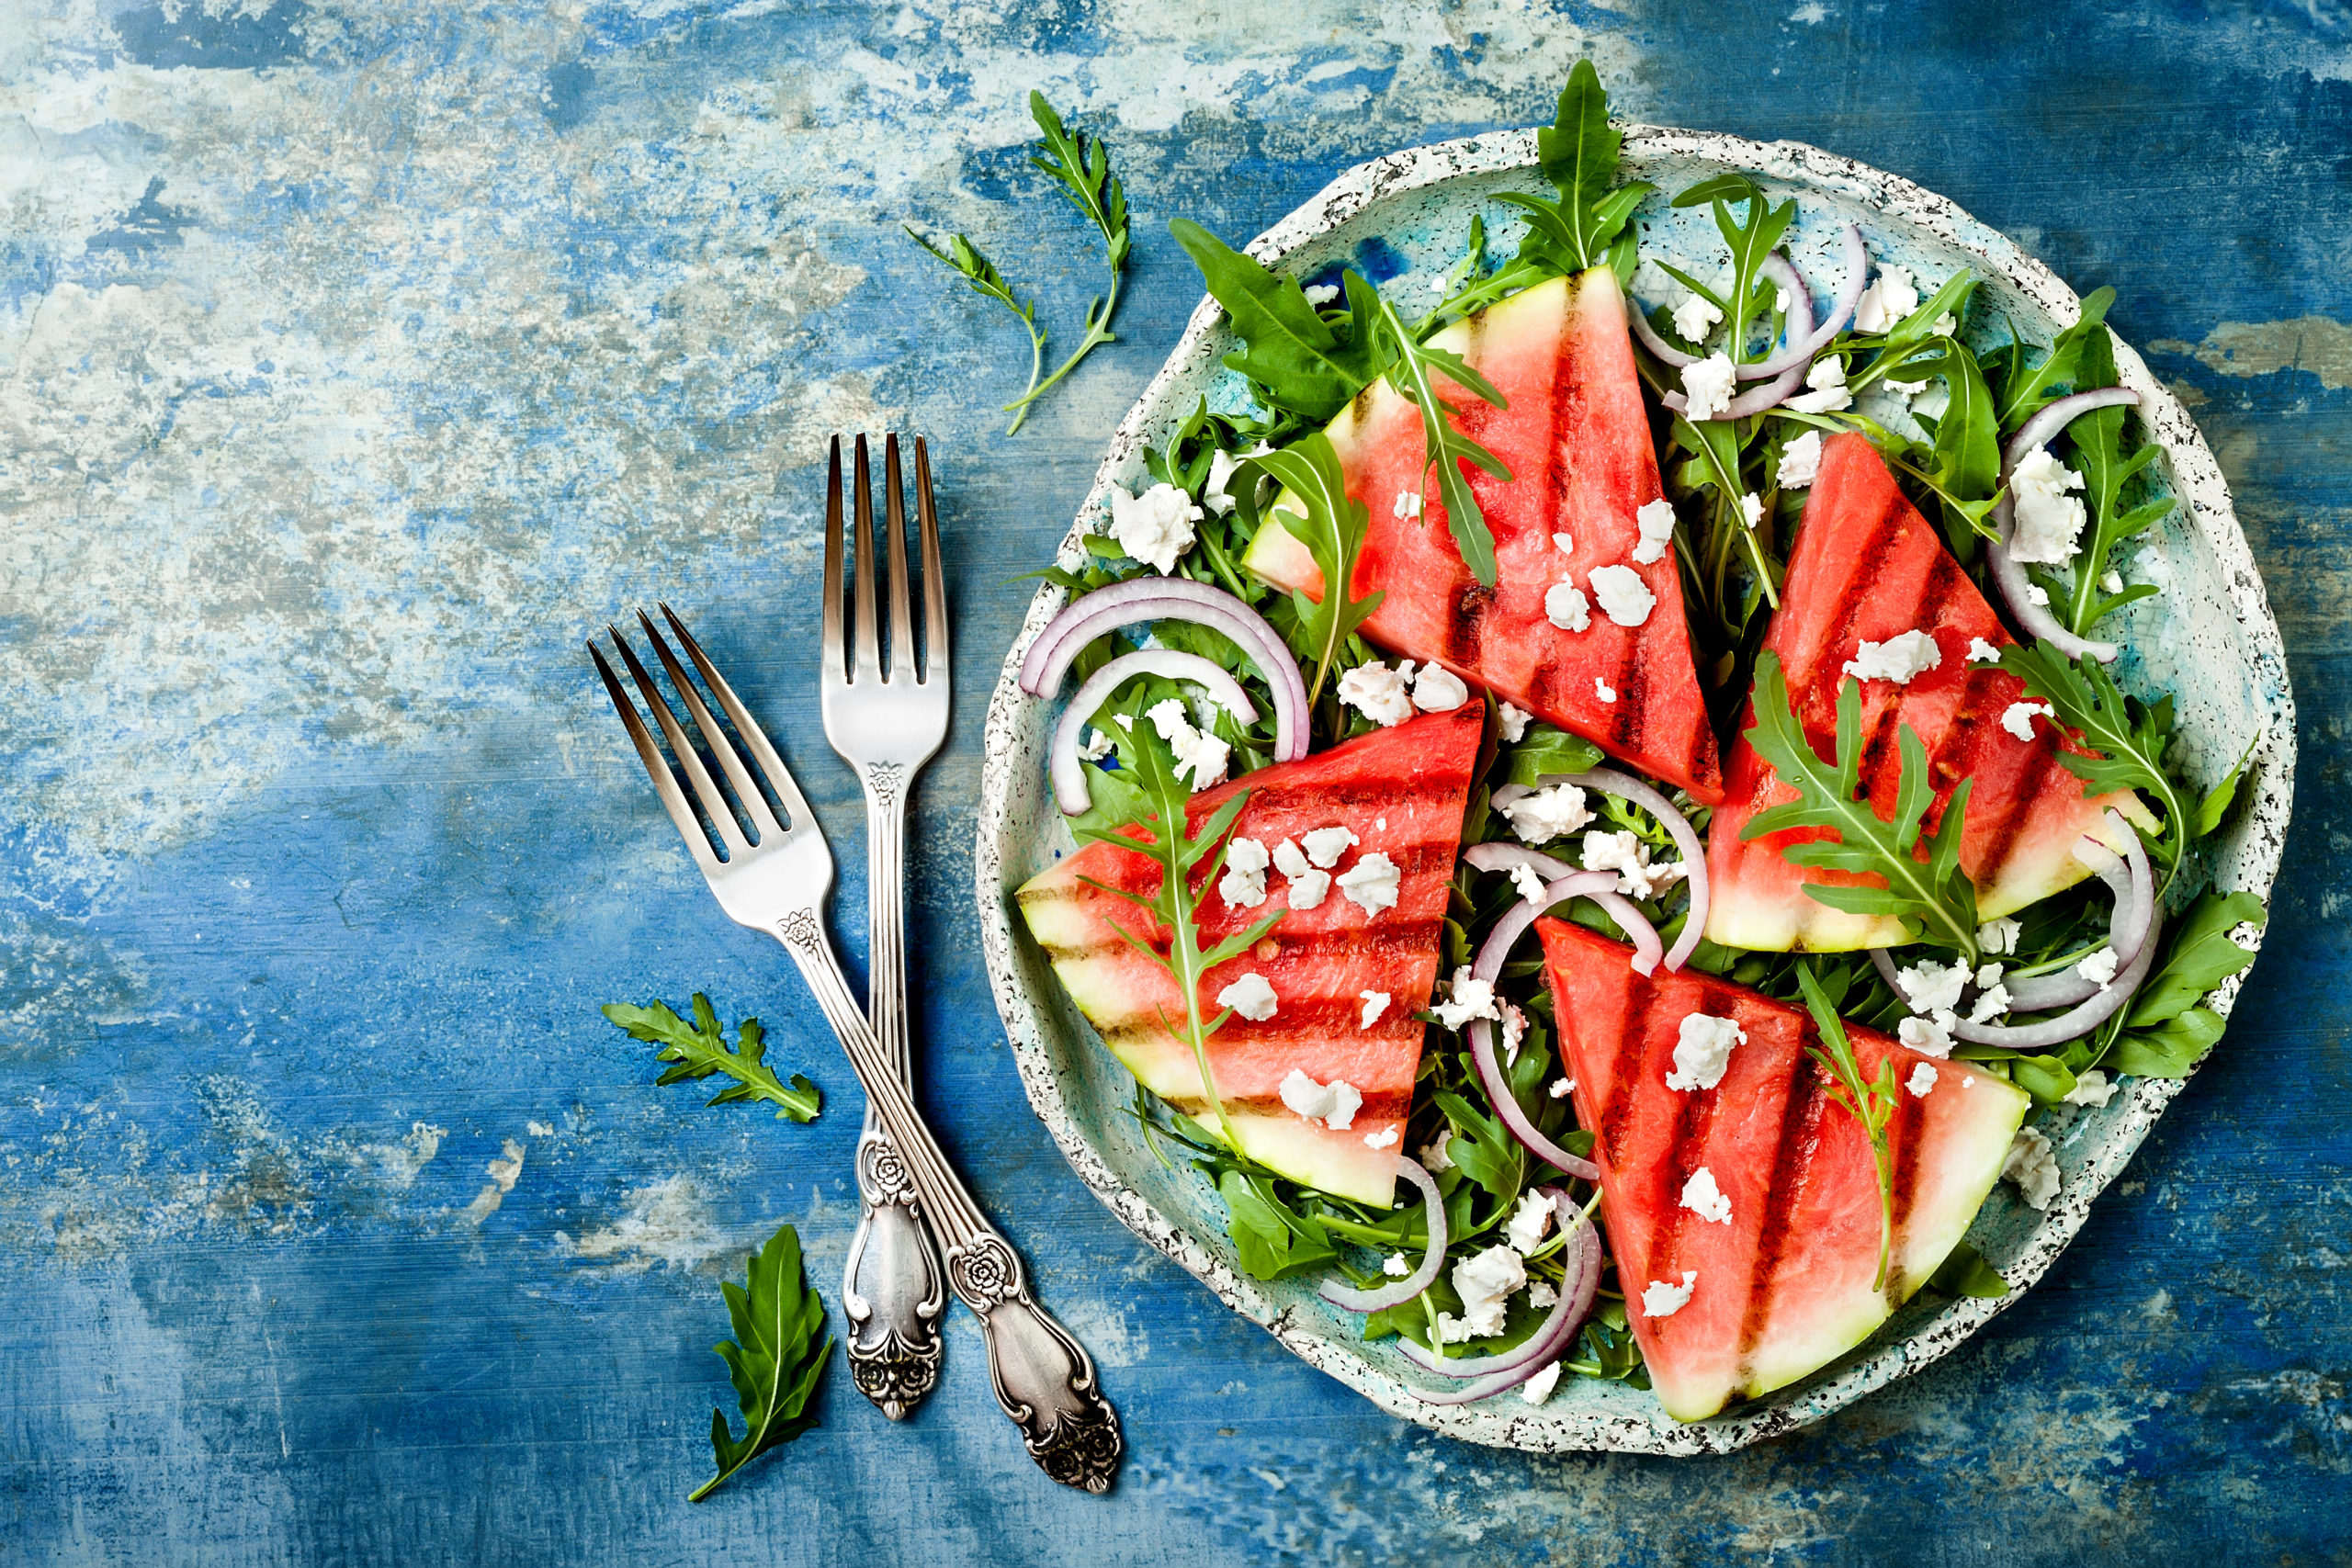 watermelon-weed-salad